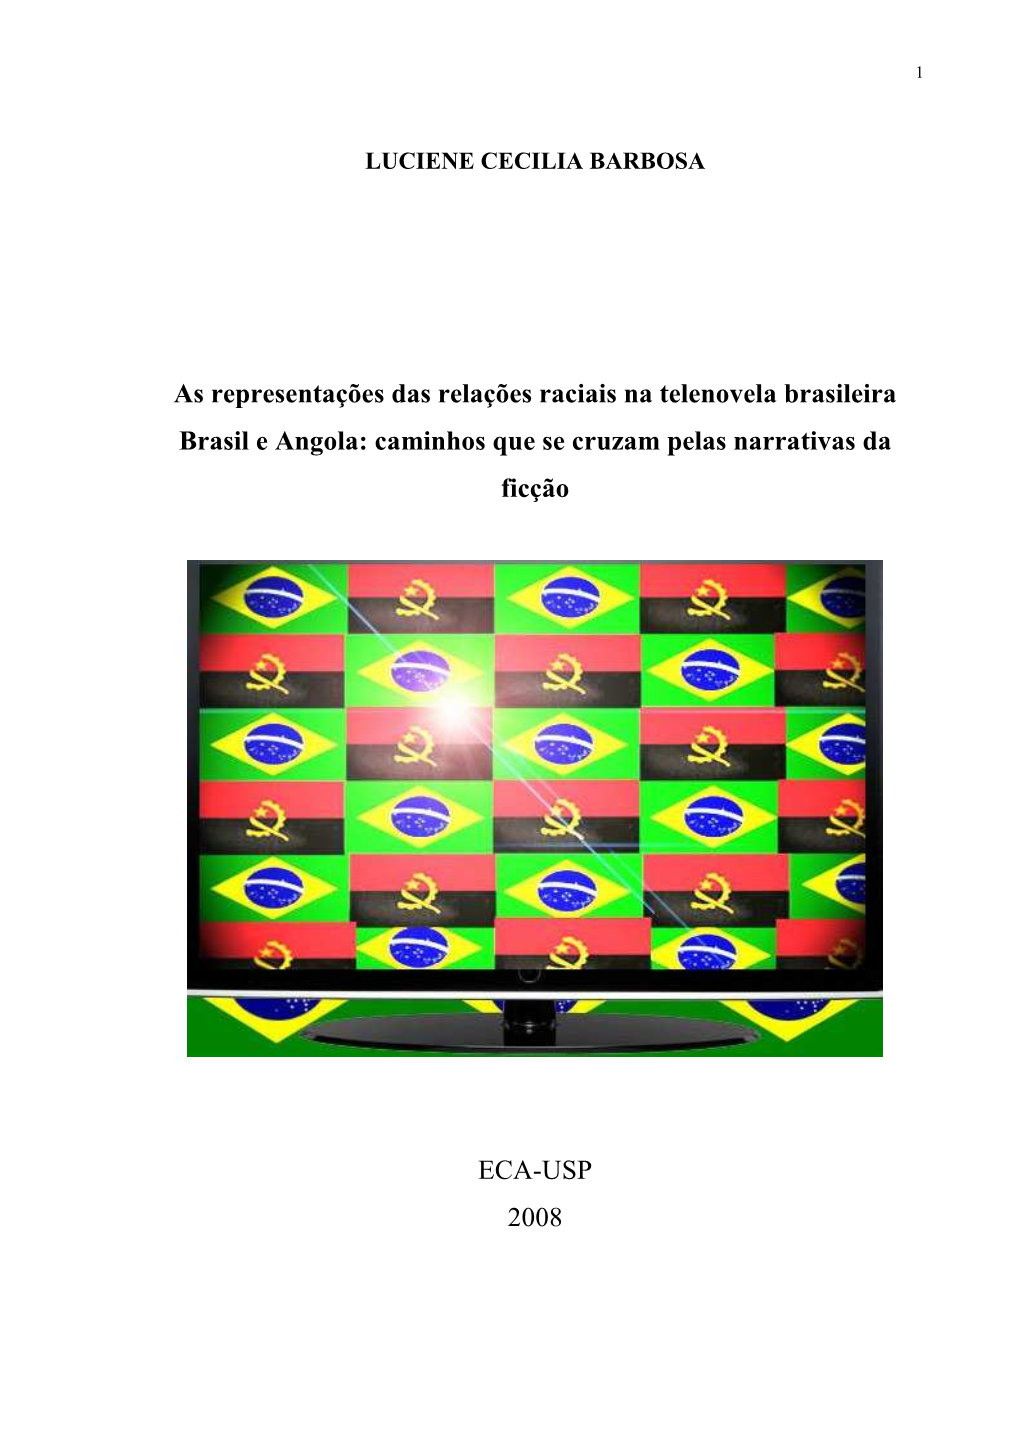 As Representações Das Relações Raciais Na Telenovela Brasileira Brasil E Angola: Caminhos Que Se Cruzam Pelas Narrativas Da Ficção